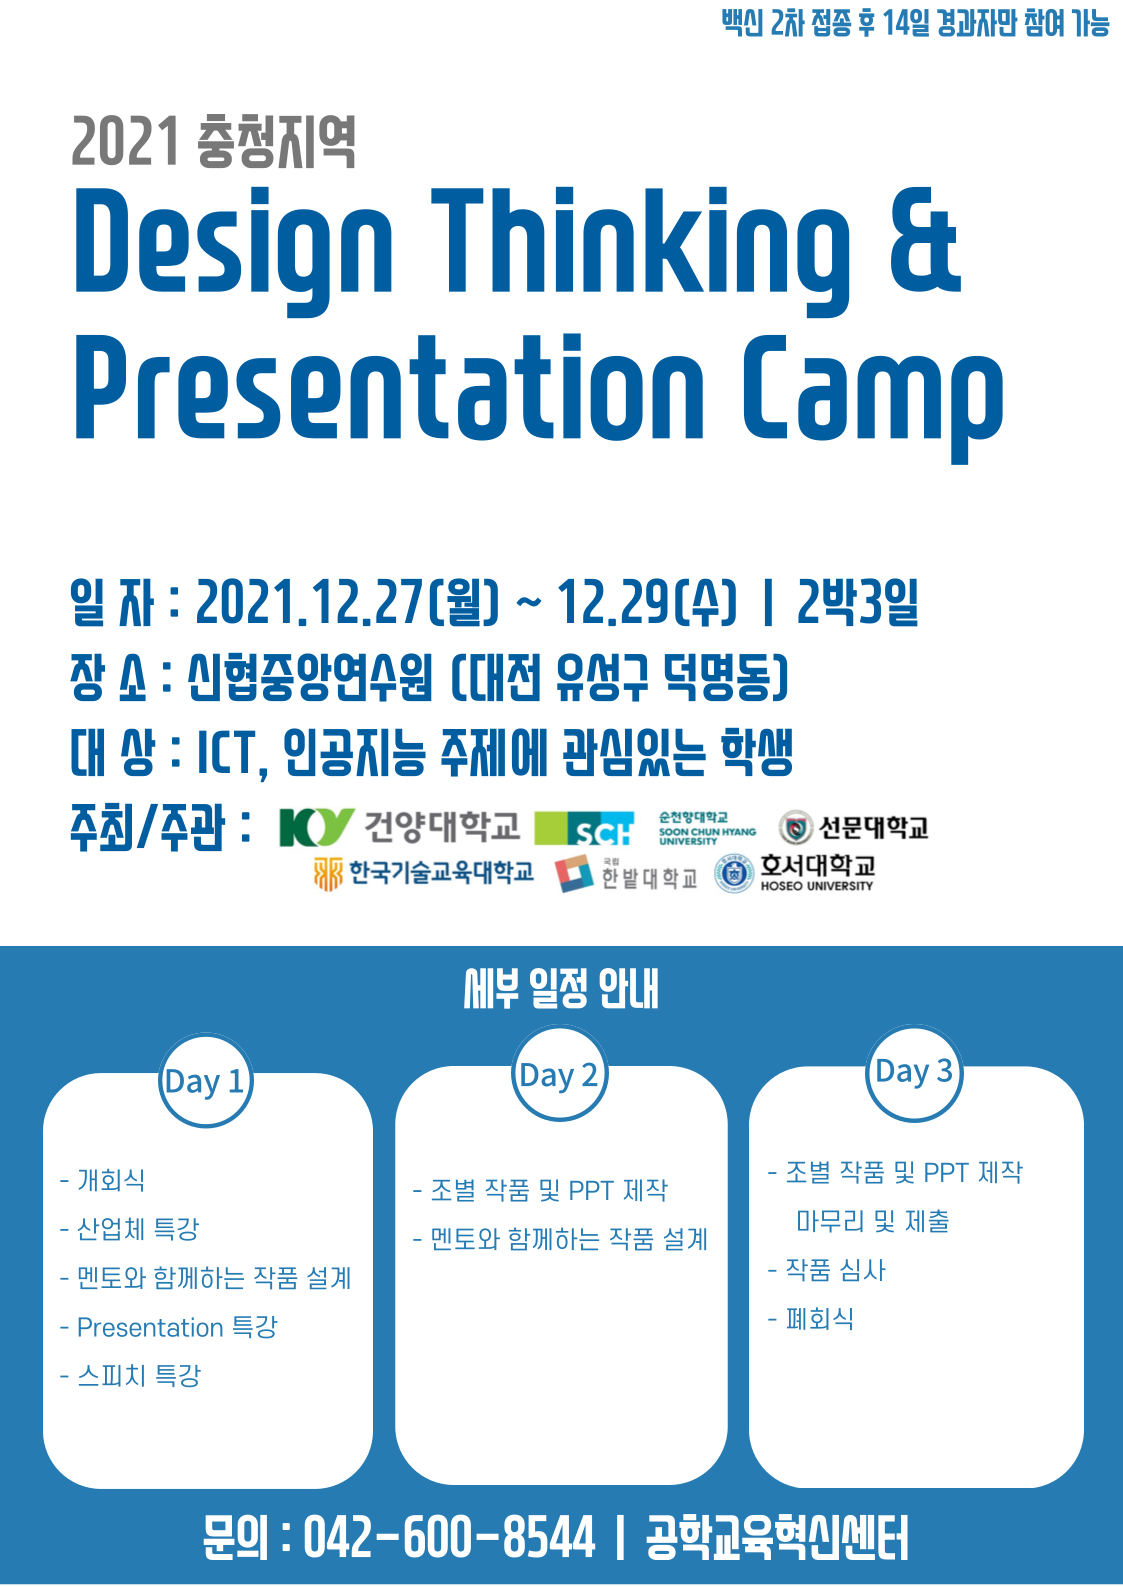 2021 충청지역 ICT 산업체 Design Thinking & Presentation Camp